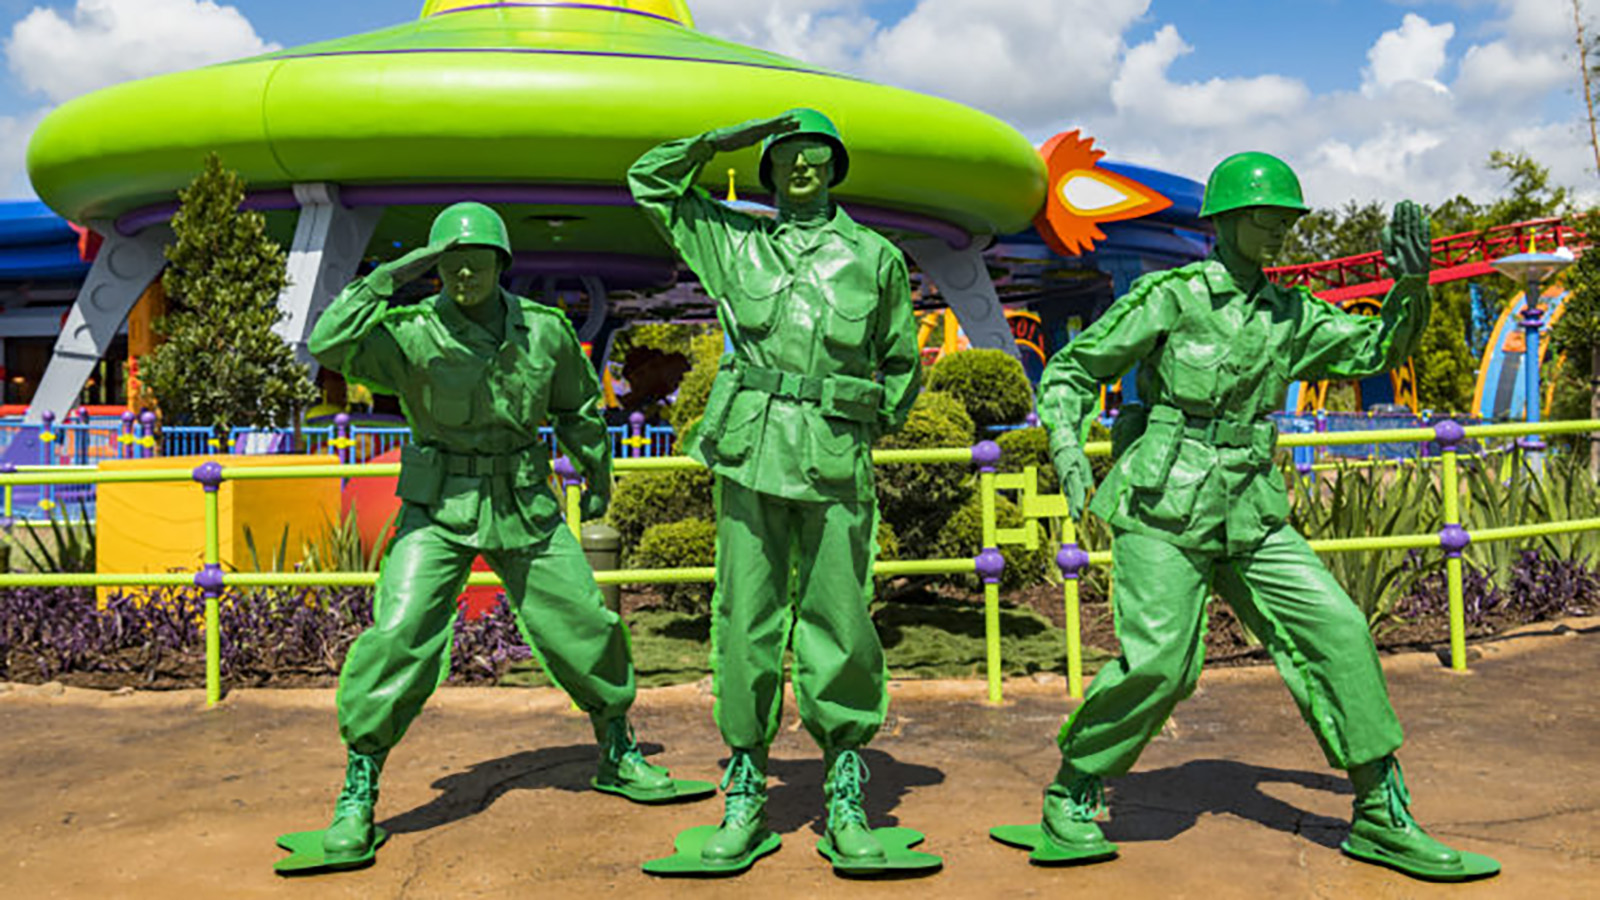 Green-Army-Man-Personagens-dos-Filmes-da-Disney-nos-Parques